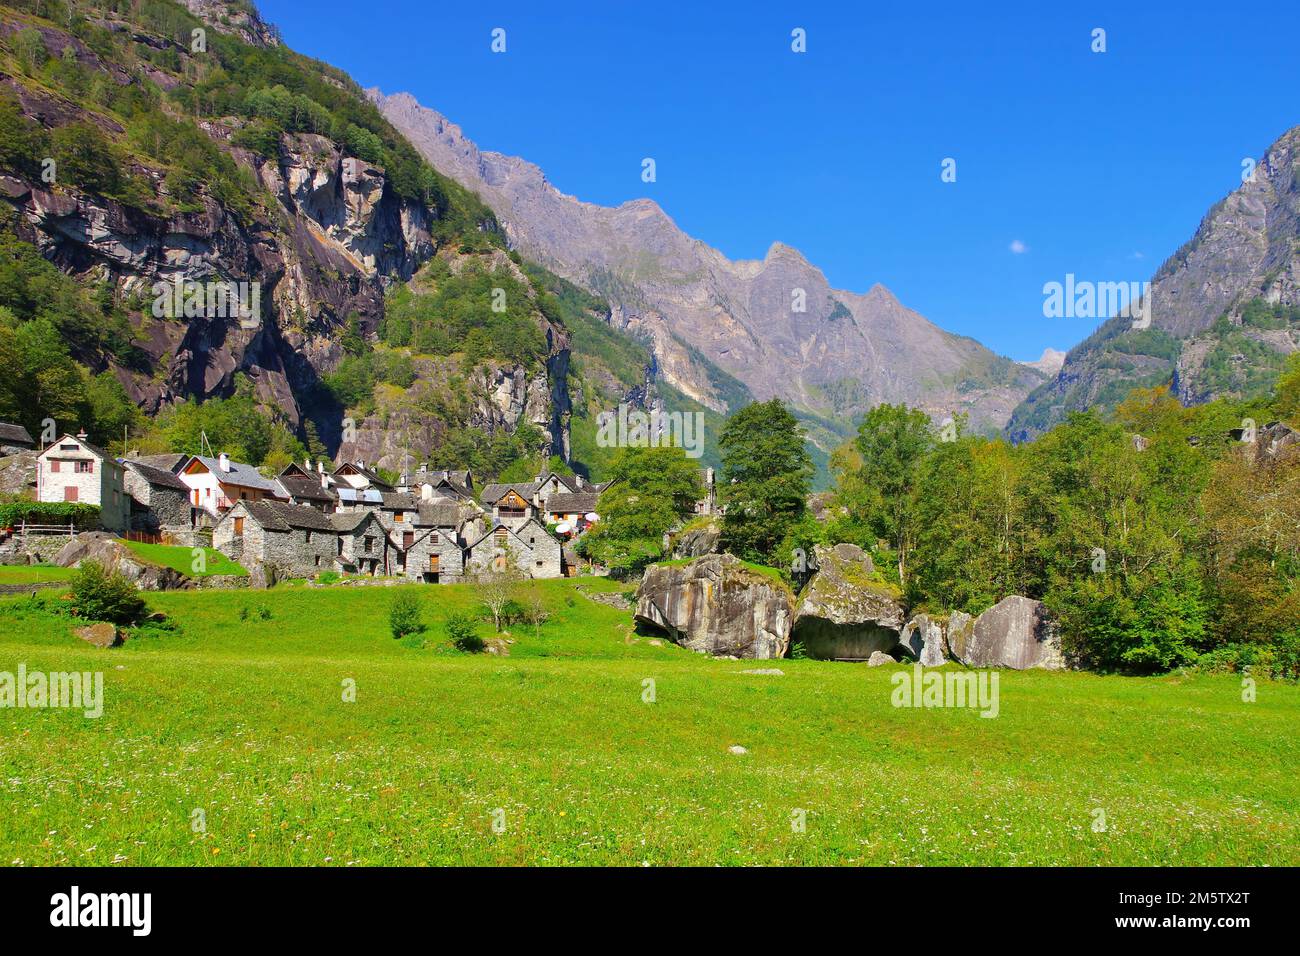 La piccola frazione di Sonlerto in Val Bavona, Ticino in Svizzera Foto Stock